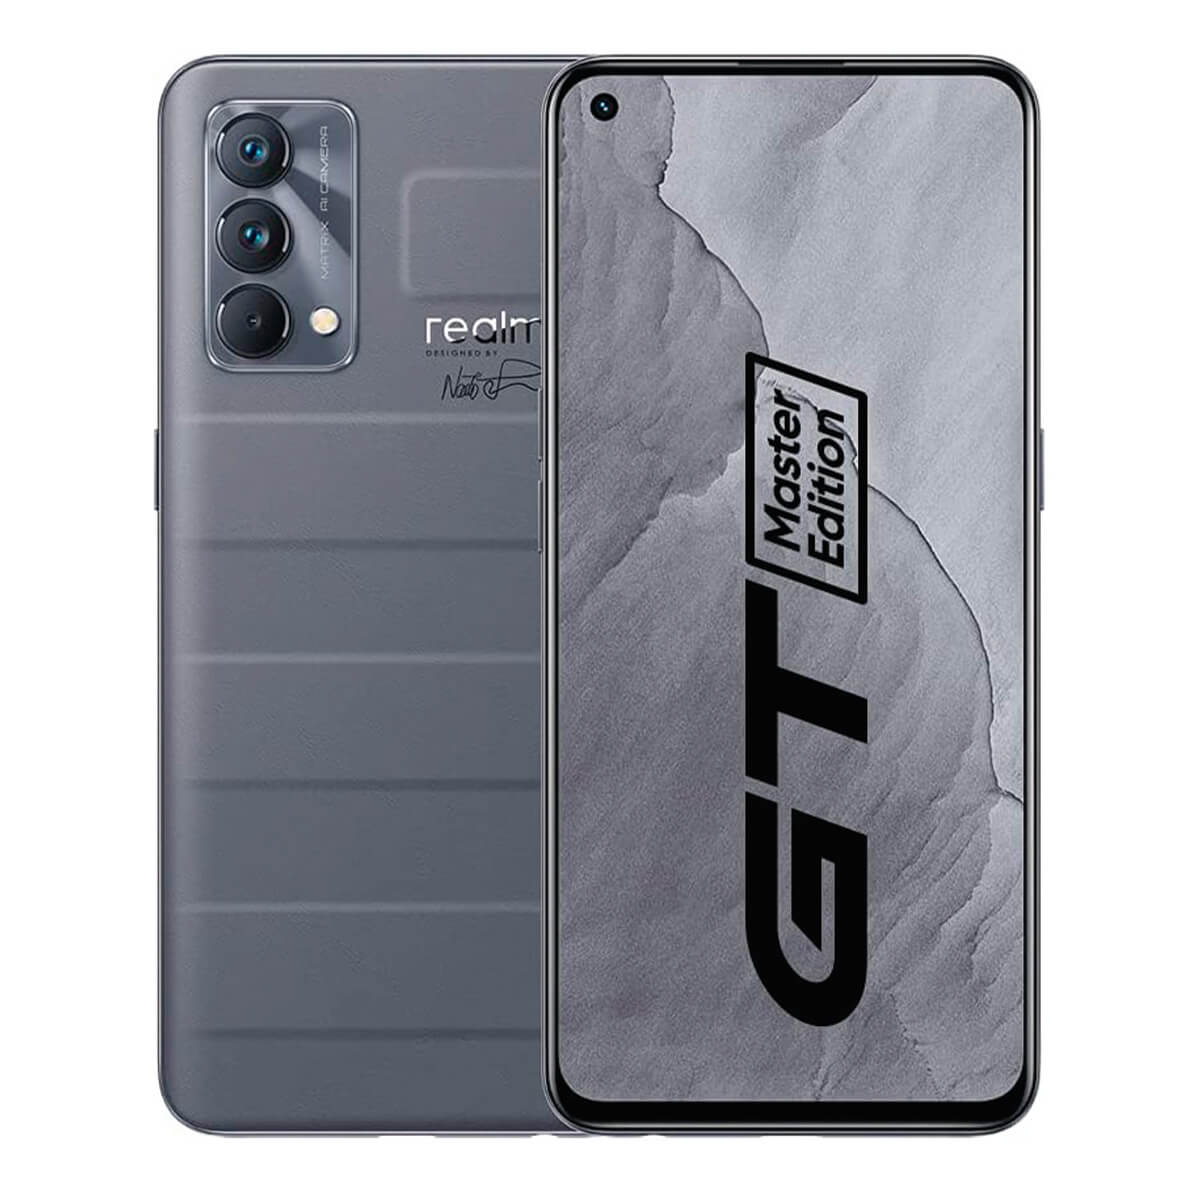 REALME GT MASTER EDITION 5G 8GB/256GB GRIS (GRAY) DUAL SIM - DESPRECINTADO